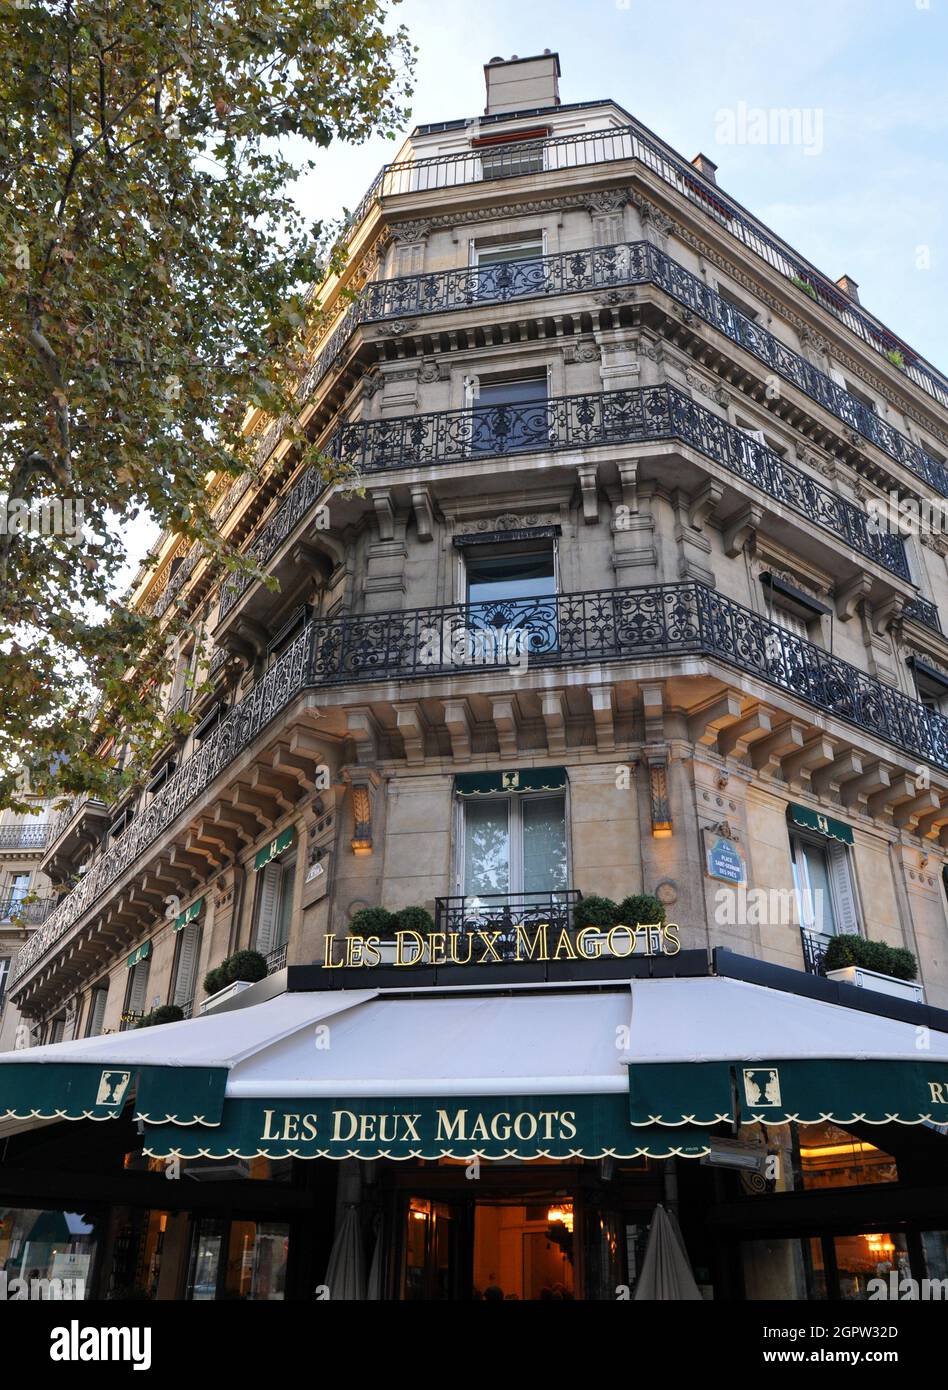 Le bâtiment abrite les deux Magots, un célèbre café et une destination touristique populaire dans le quartier de Saint-Germain-des-Prés à Paris. Banque D'Images